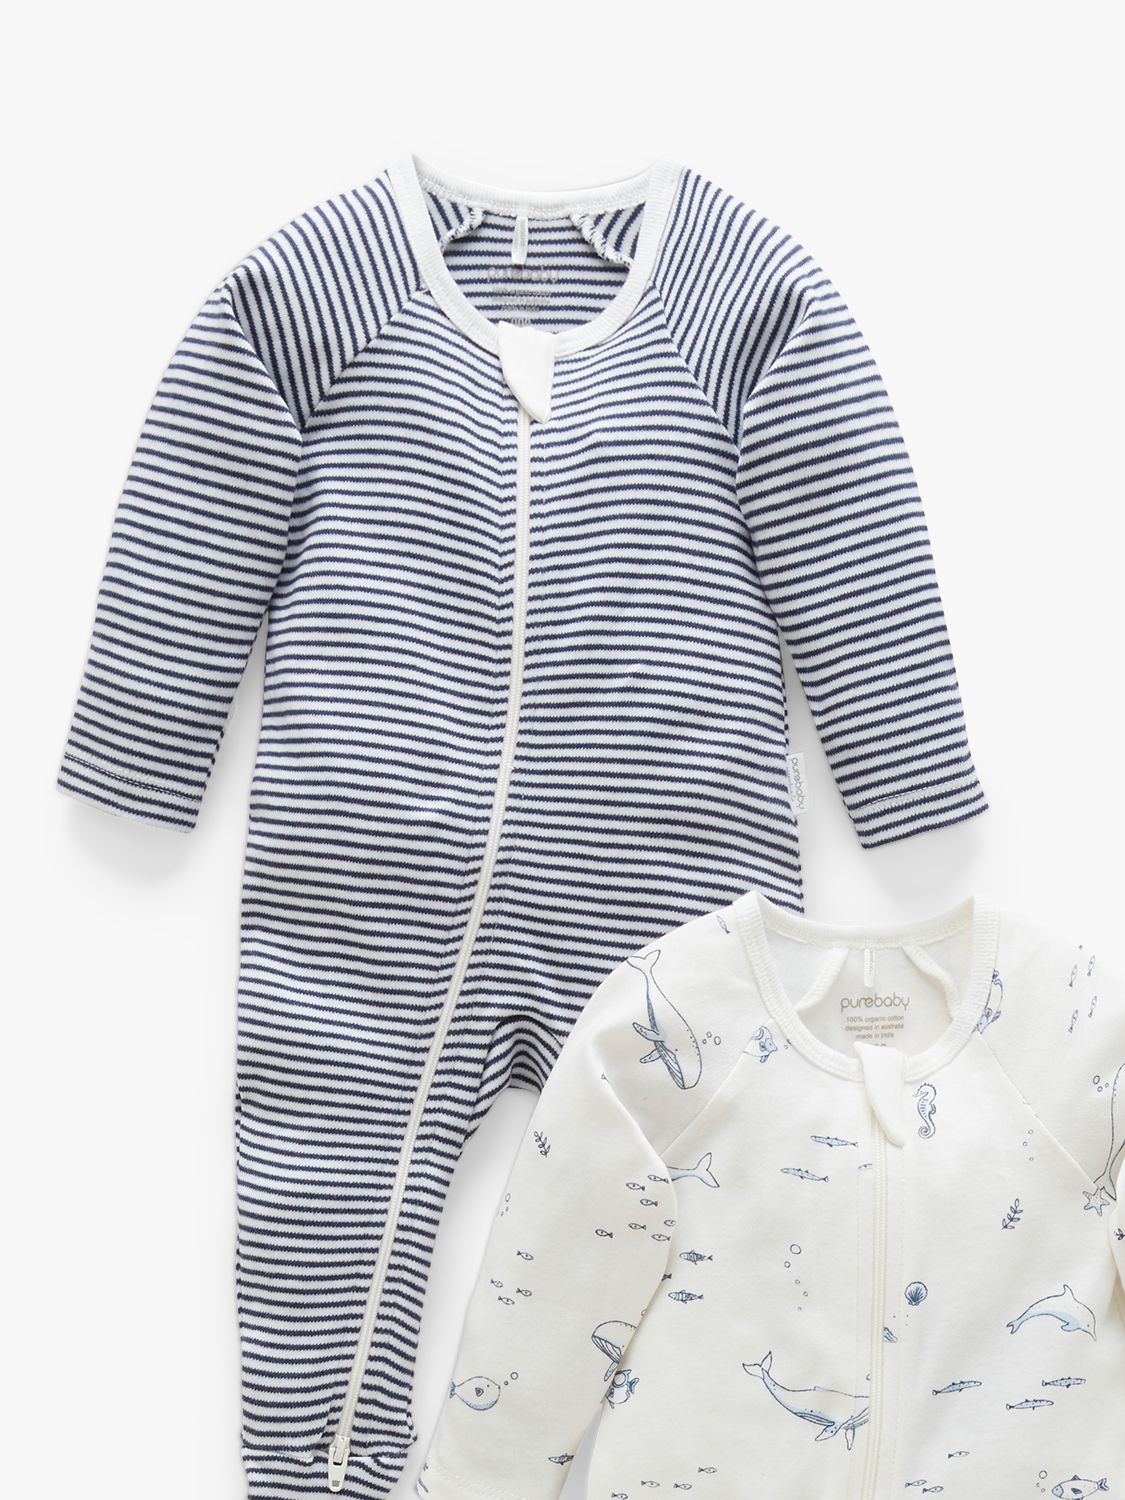 Purebaby Baby Organic Cotton Whale Stripe Zip Sleepsuit, Pack of 2, Vanilla/Nautical, Newborn